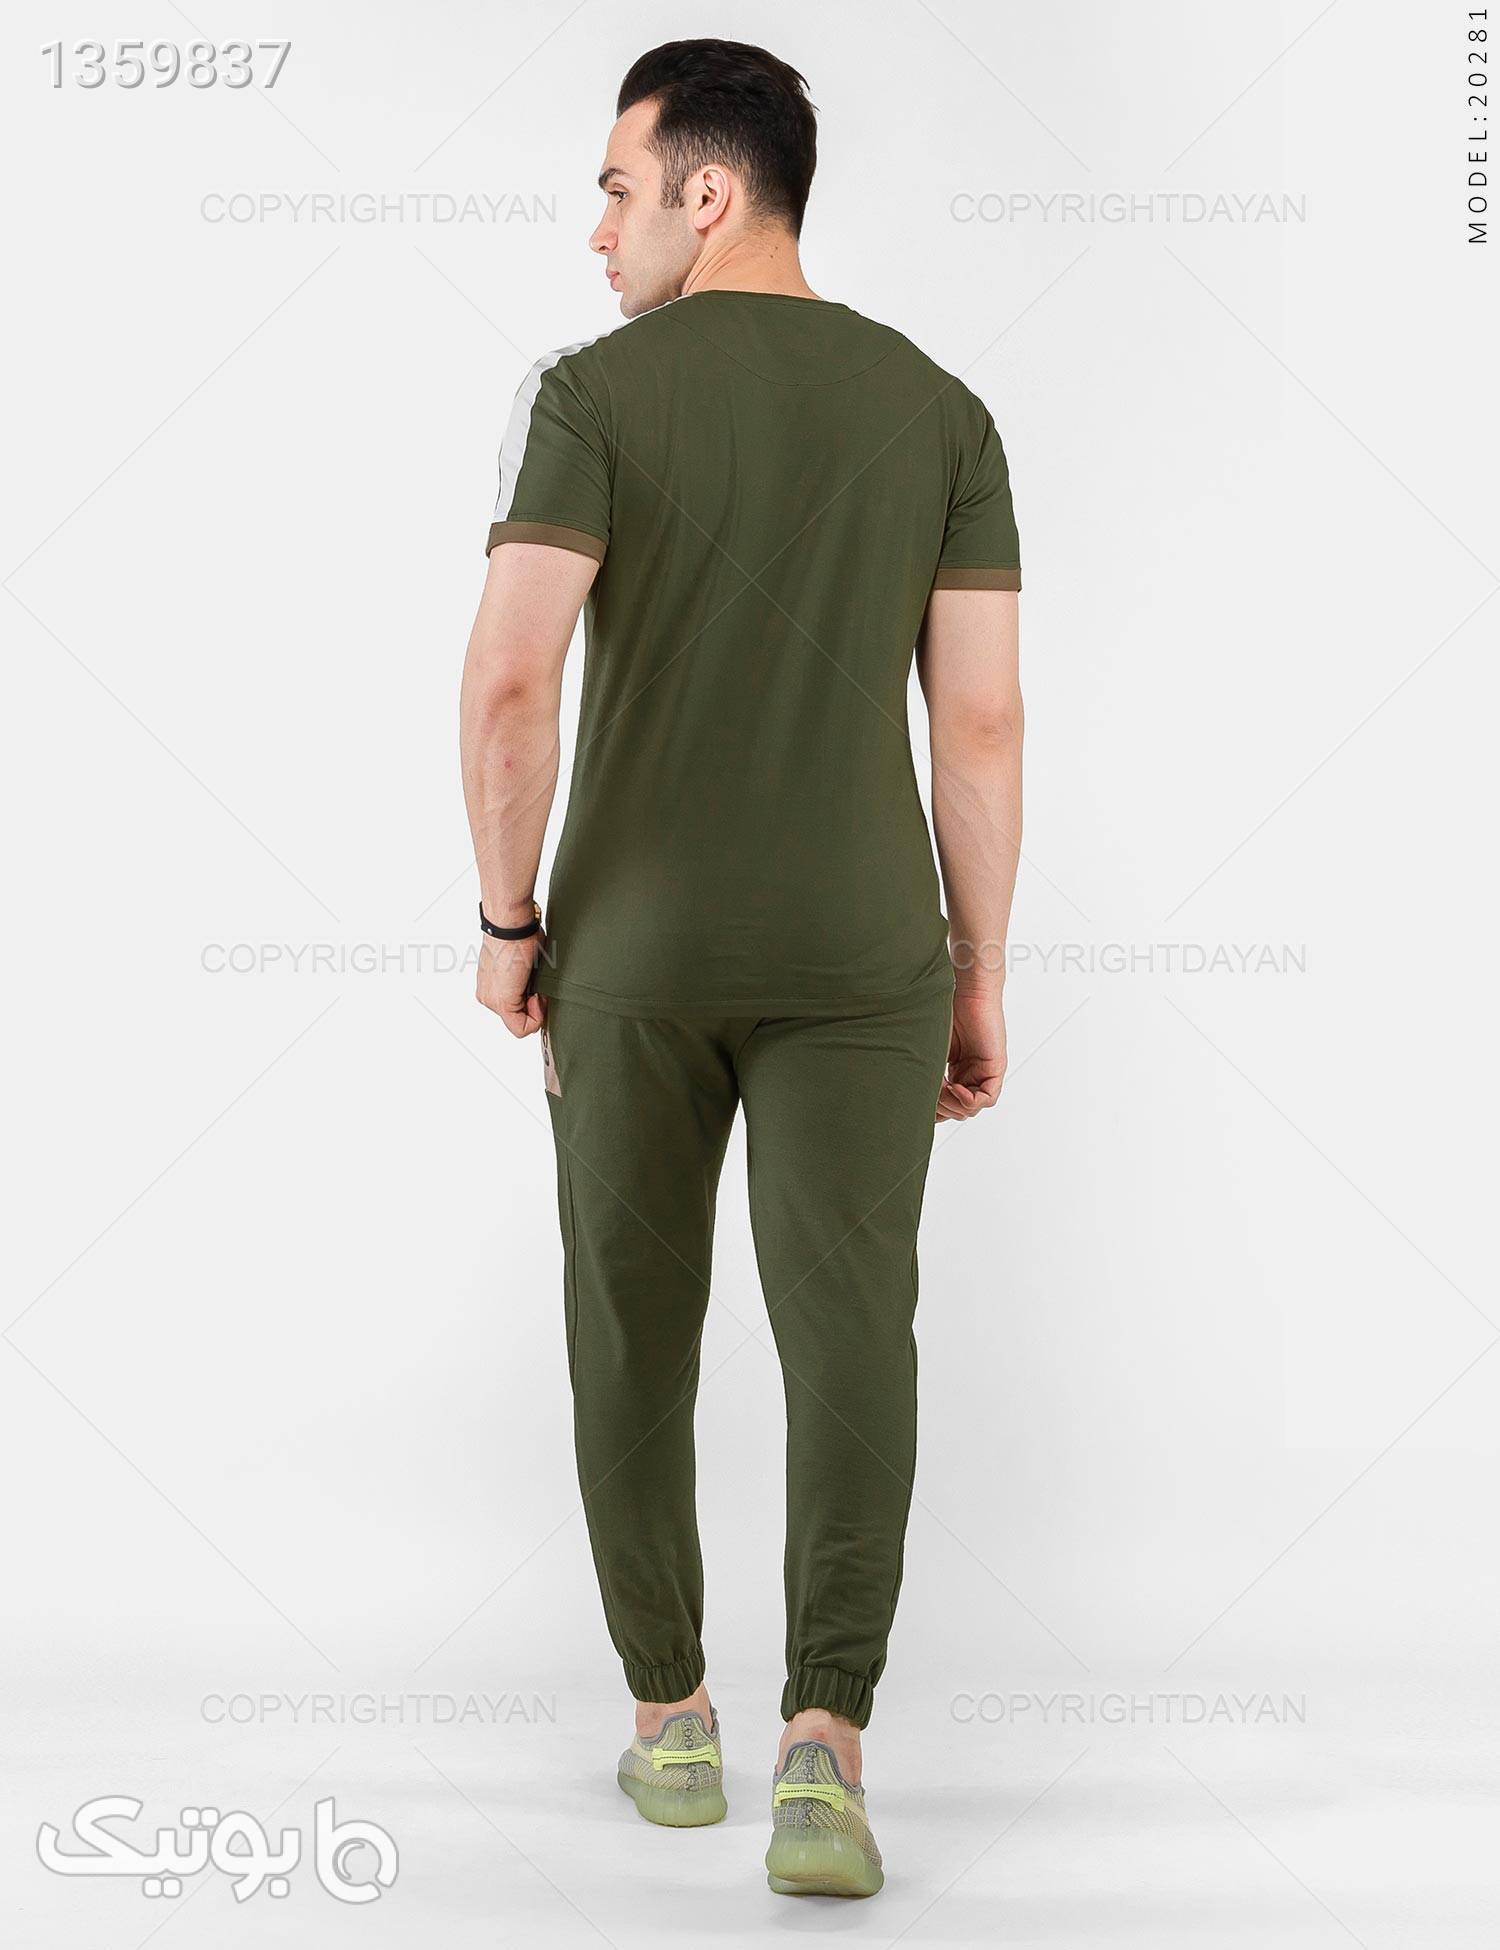 ست تیشرت و شلوار مردانه New Balance مدل 20281 سبز لباس راحتی مردانه